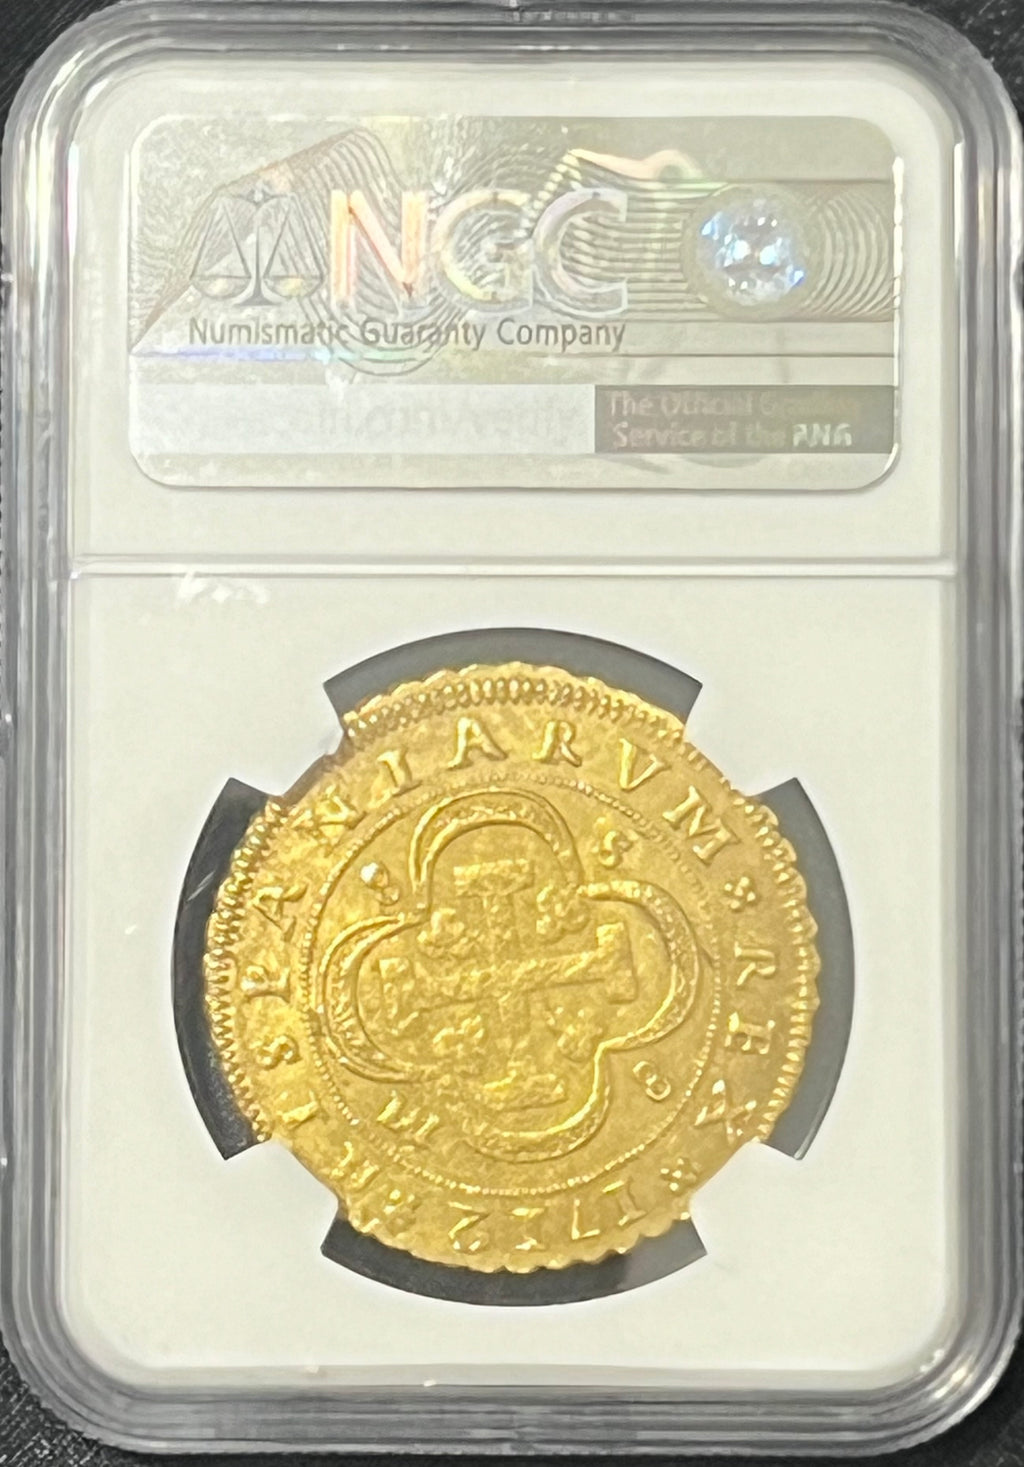 8 Escudos Spain Gold Coin NGC Grade MS 61 (1712)